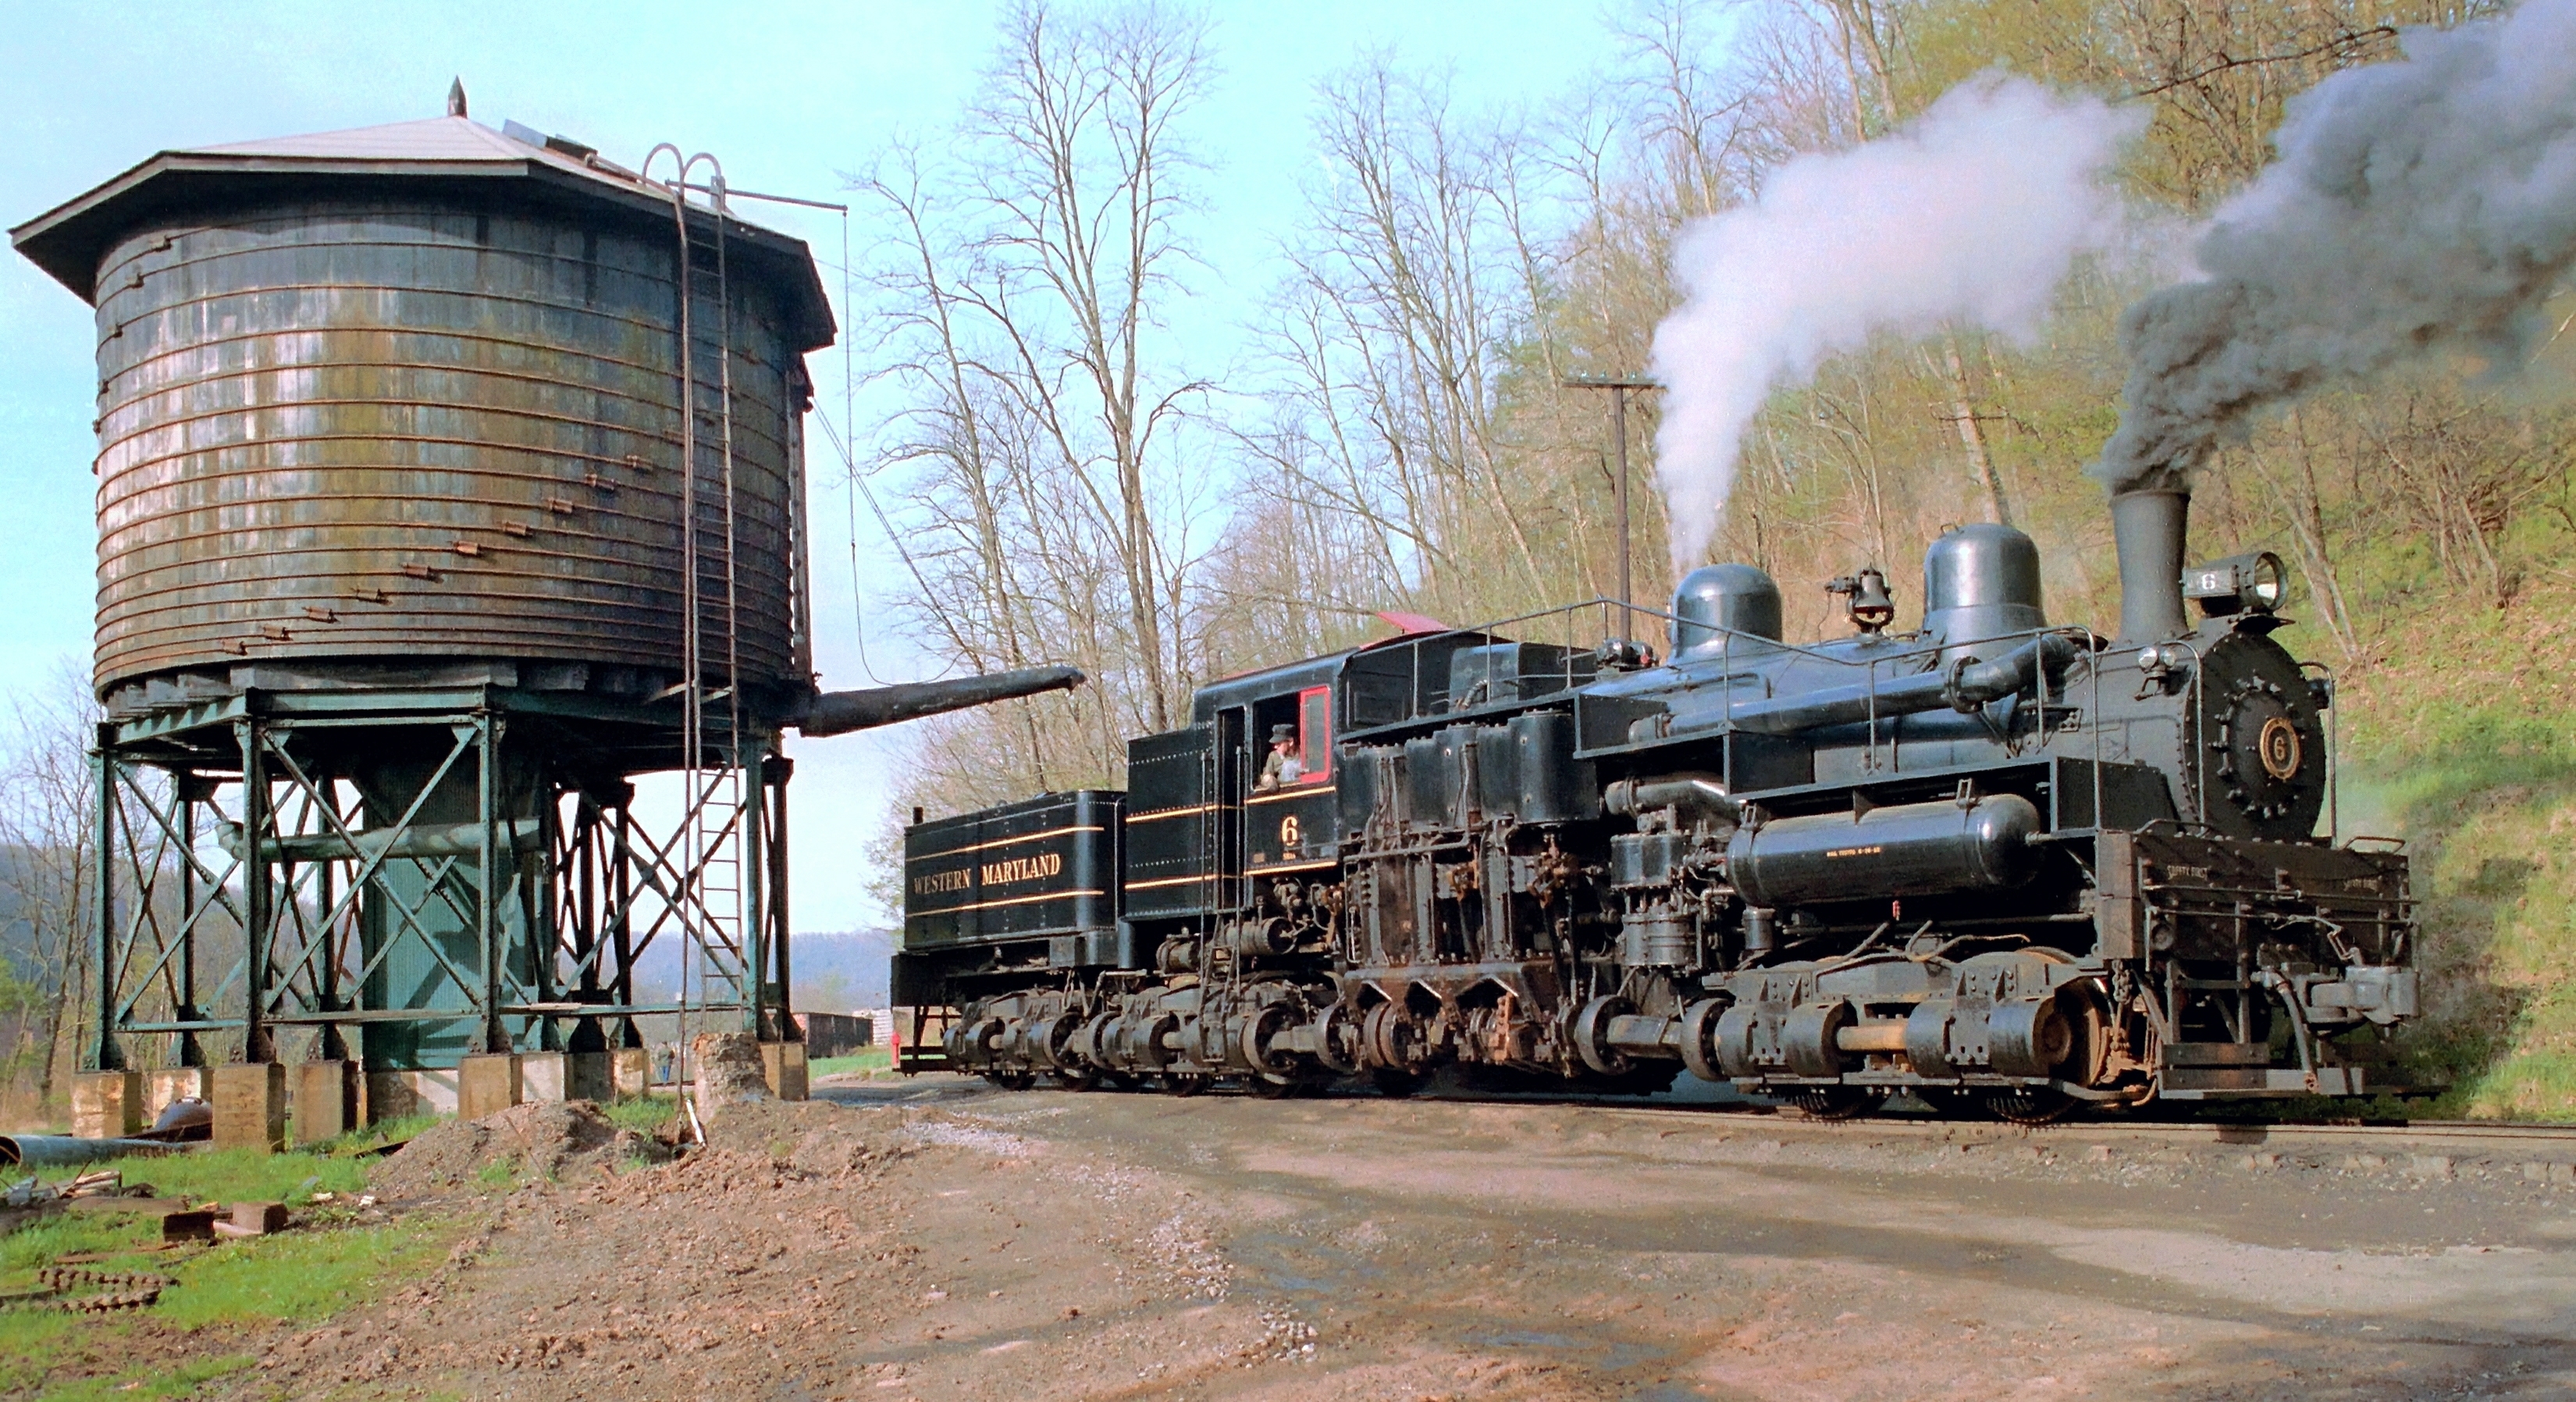 Паровоз в воде. Western Maryland Railway паровоз. Американские паровозы 19 века. Старый поезд. Советский паровоз.